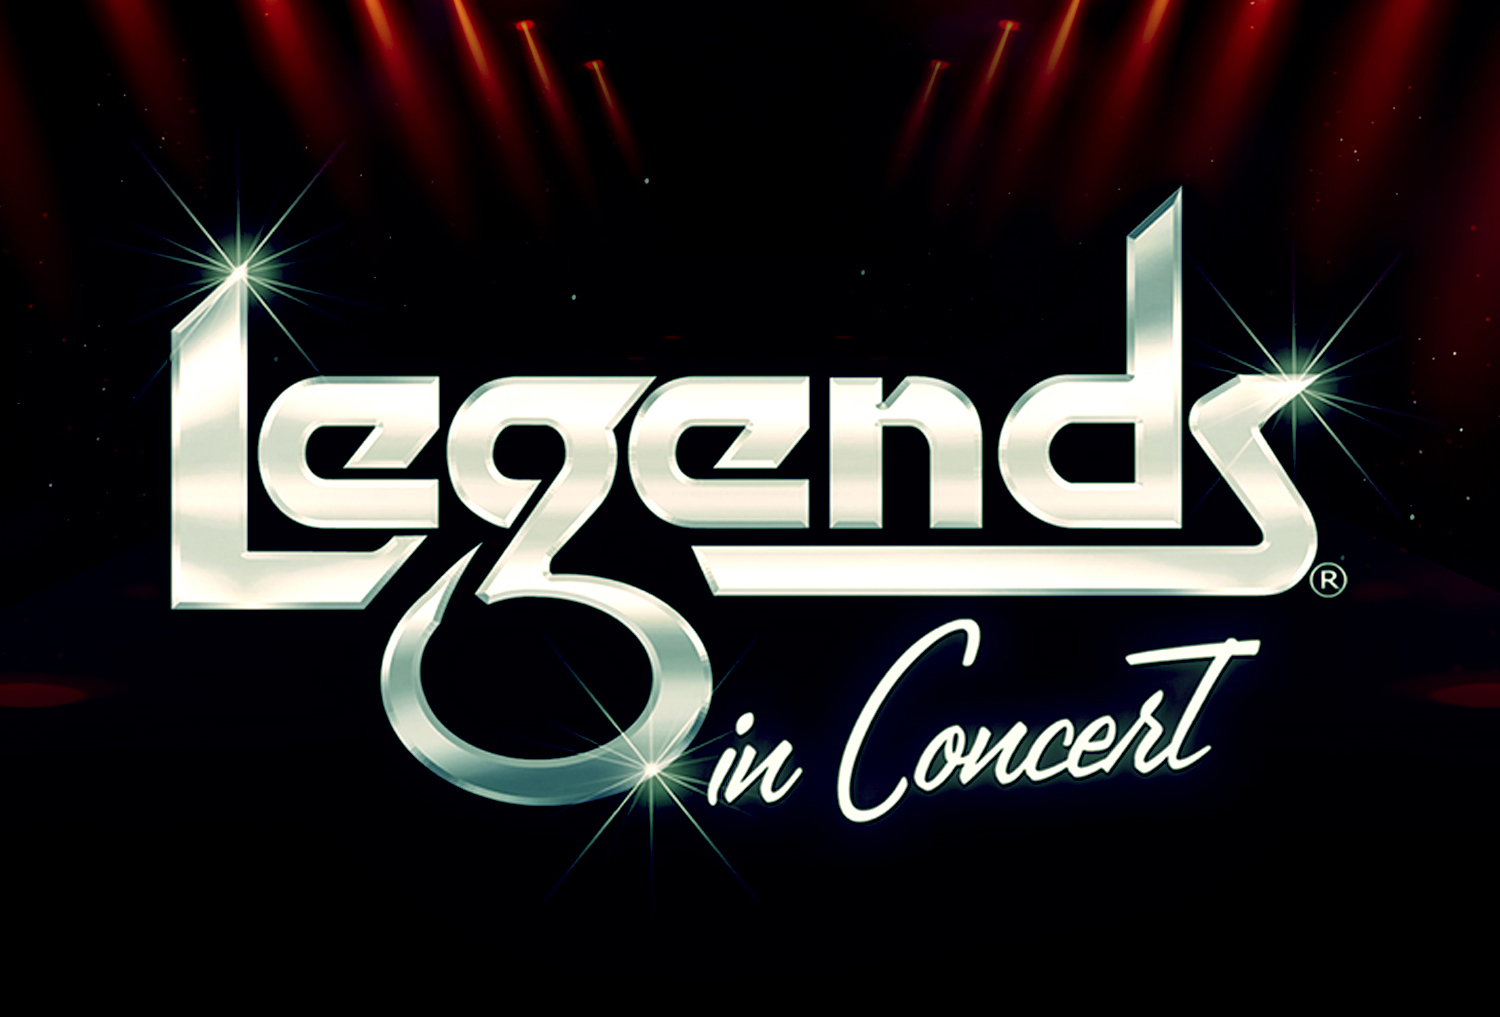 Legends in Concert